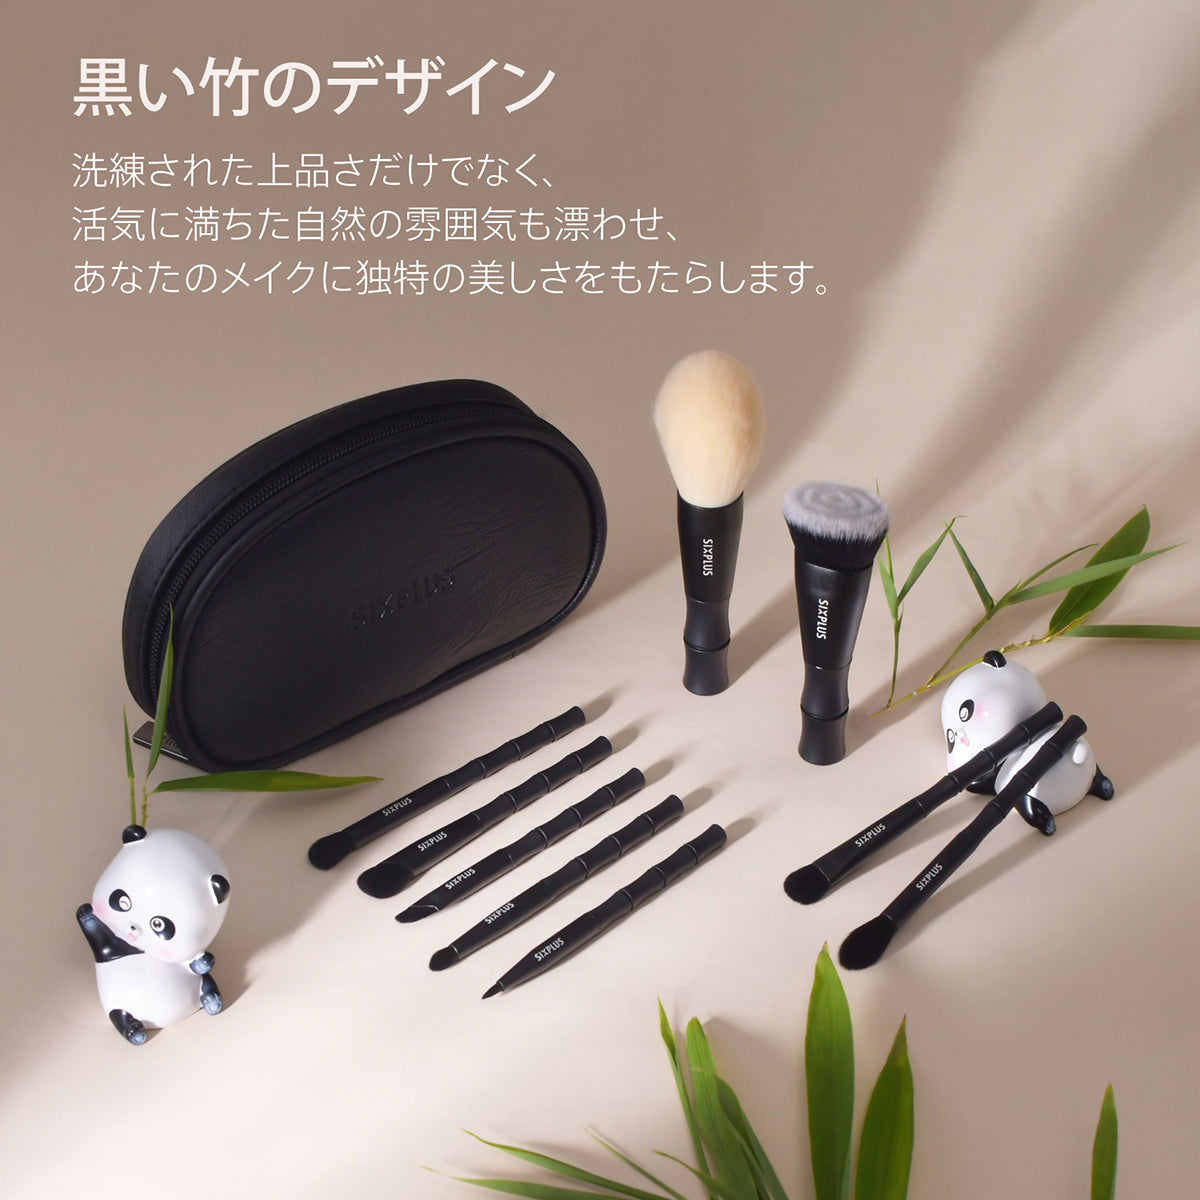 【人気商品】SIXPLUS 黒竹メイクブラシ9本セット 人気 化粧ブラシ ファンキット/セット